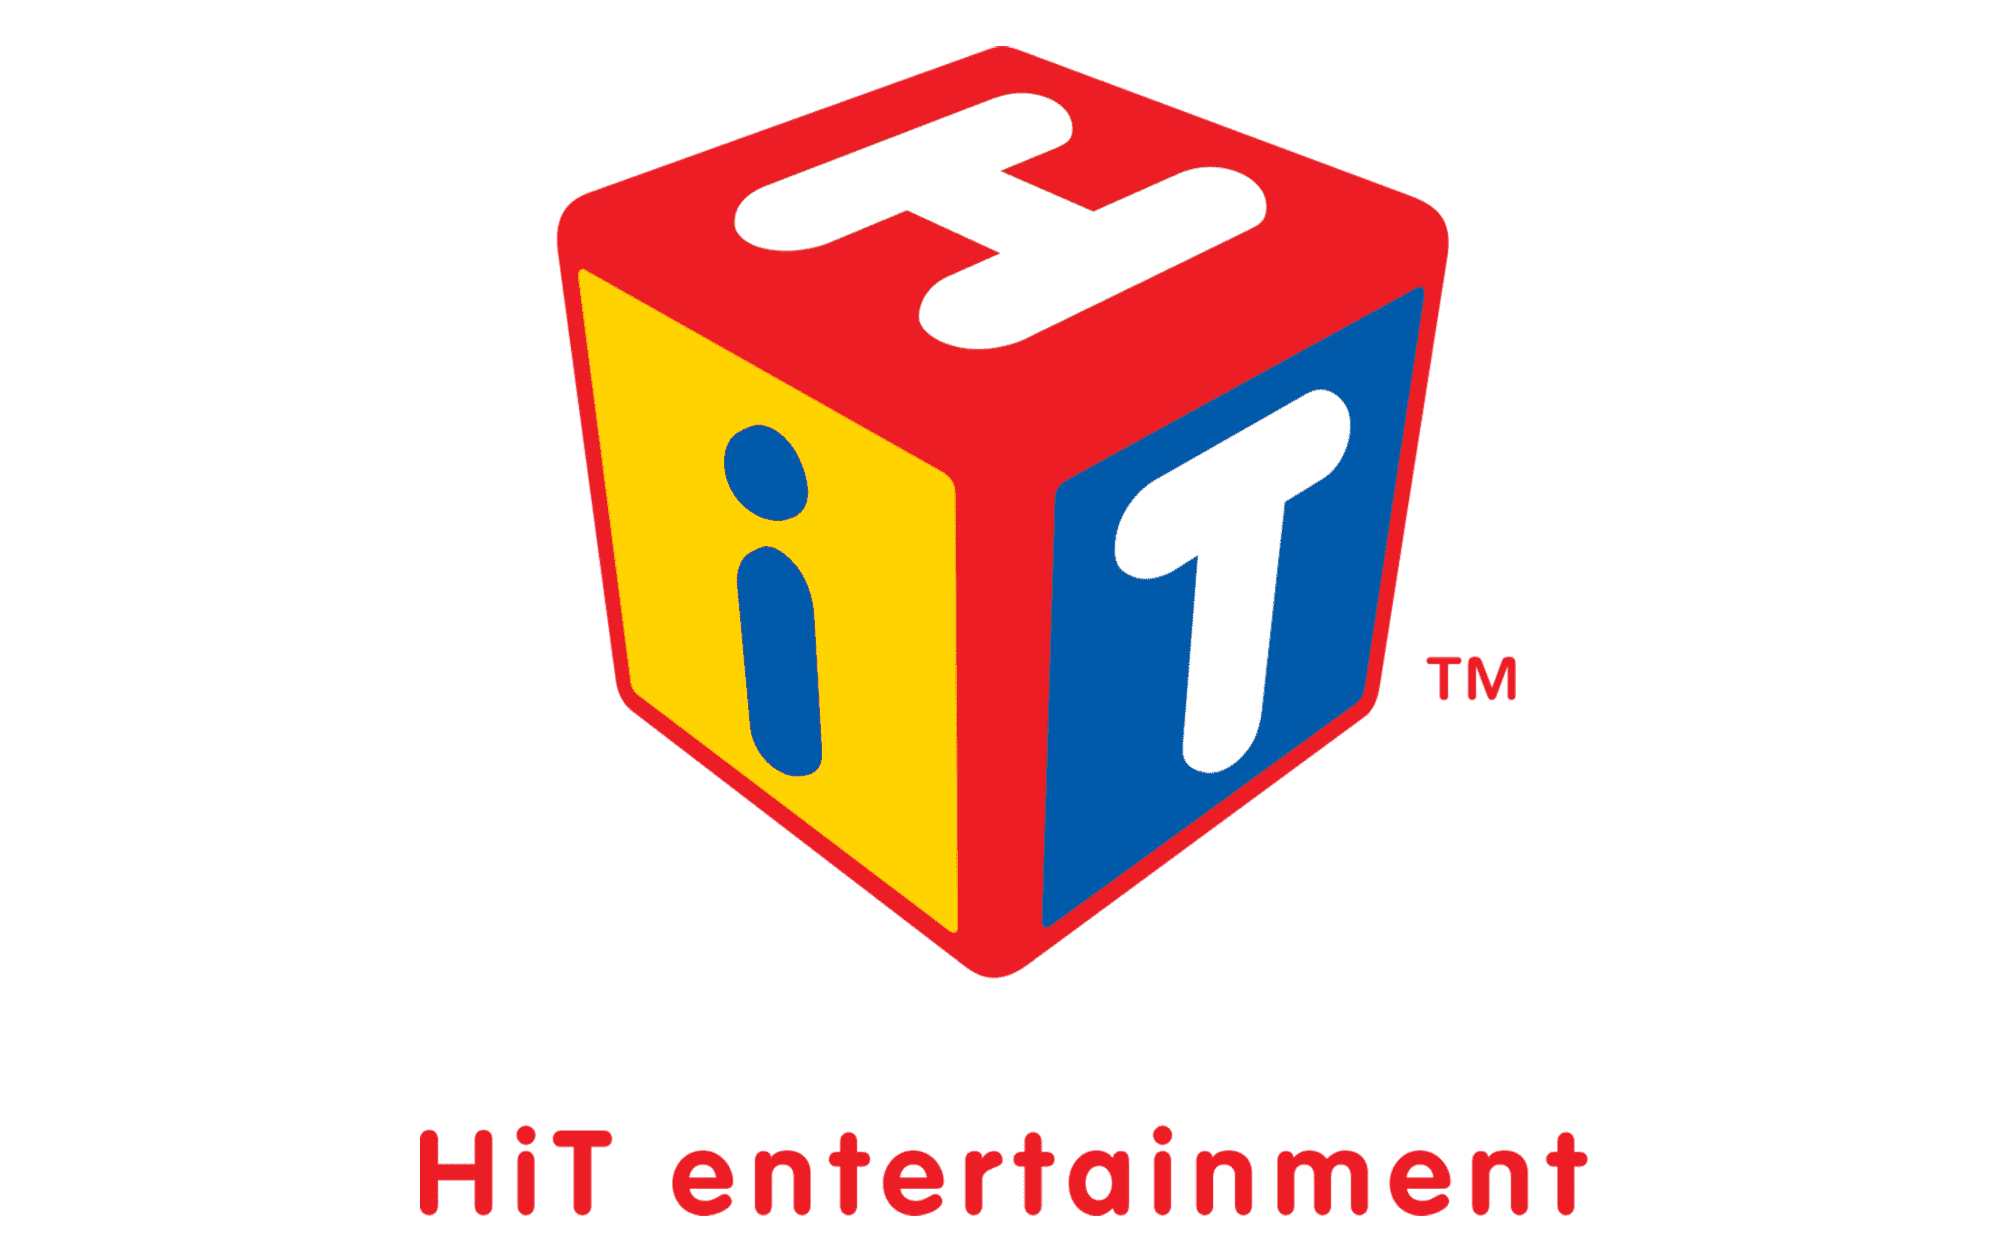 hit entertainment plc